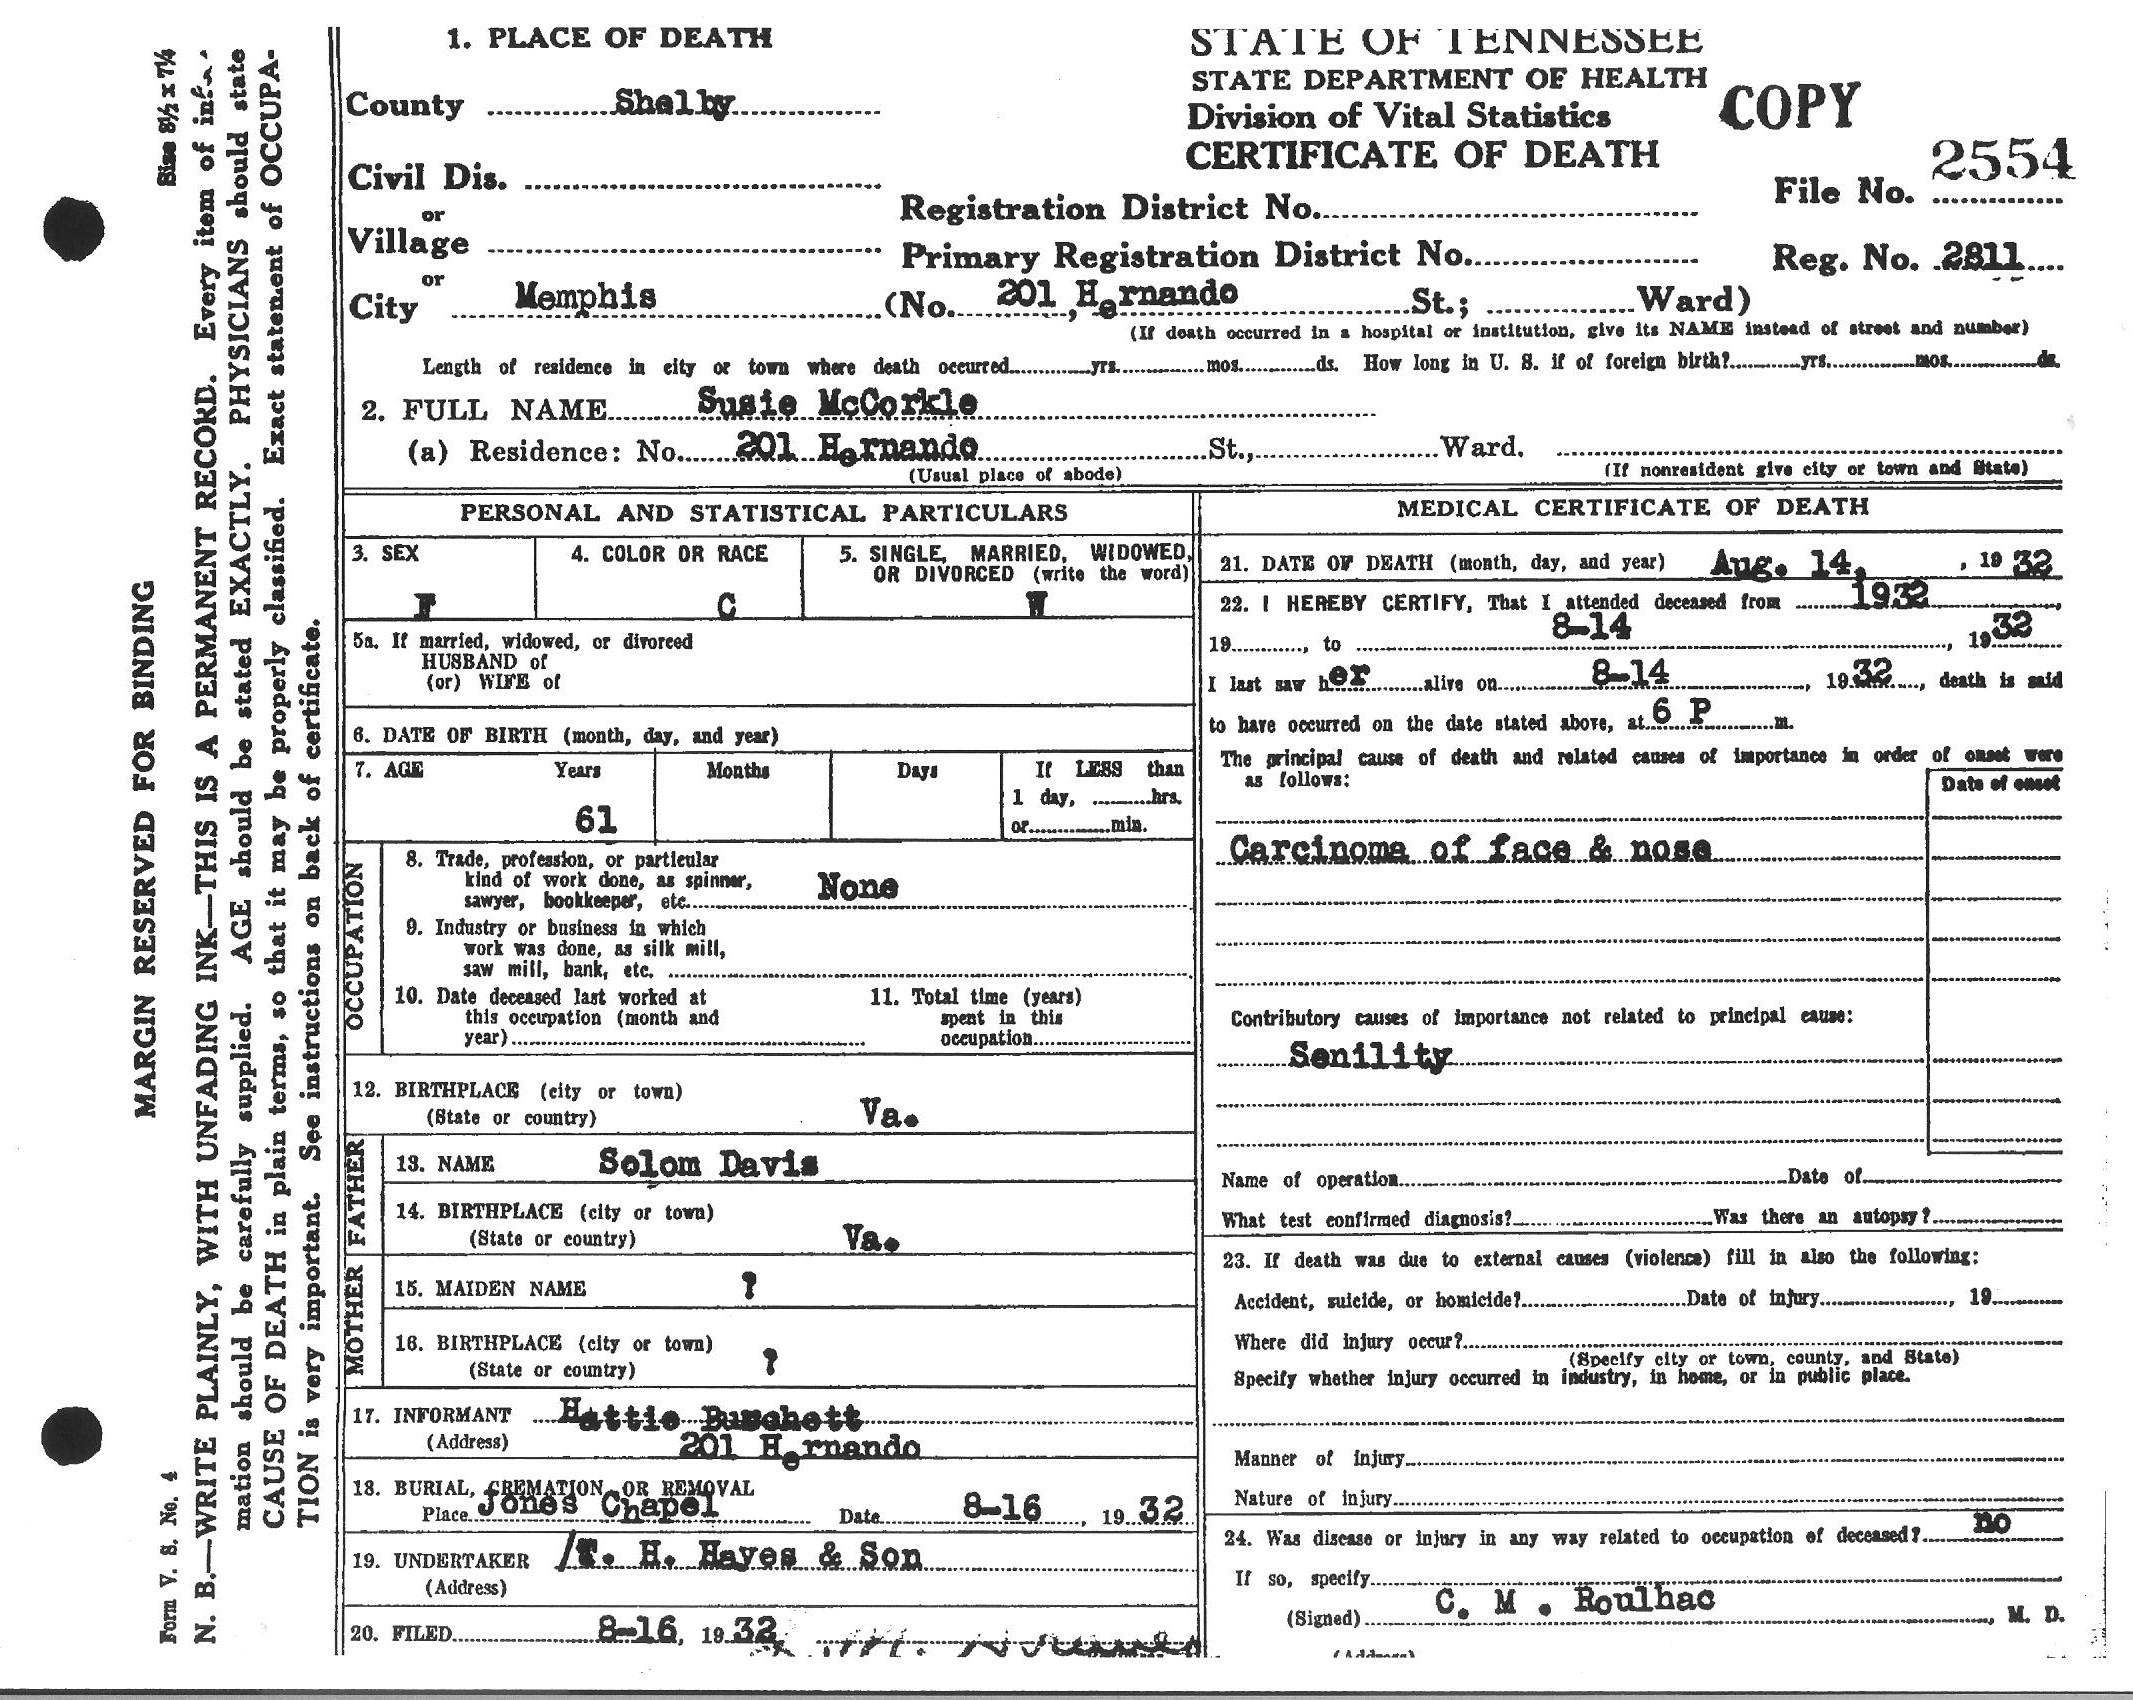 Susan (Susie) Davis-McCorkle's Death Certificate